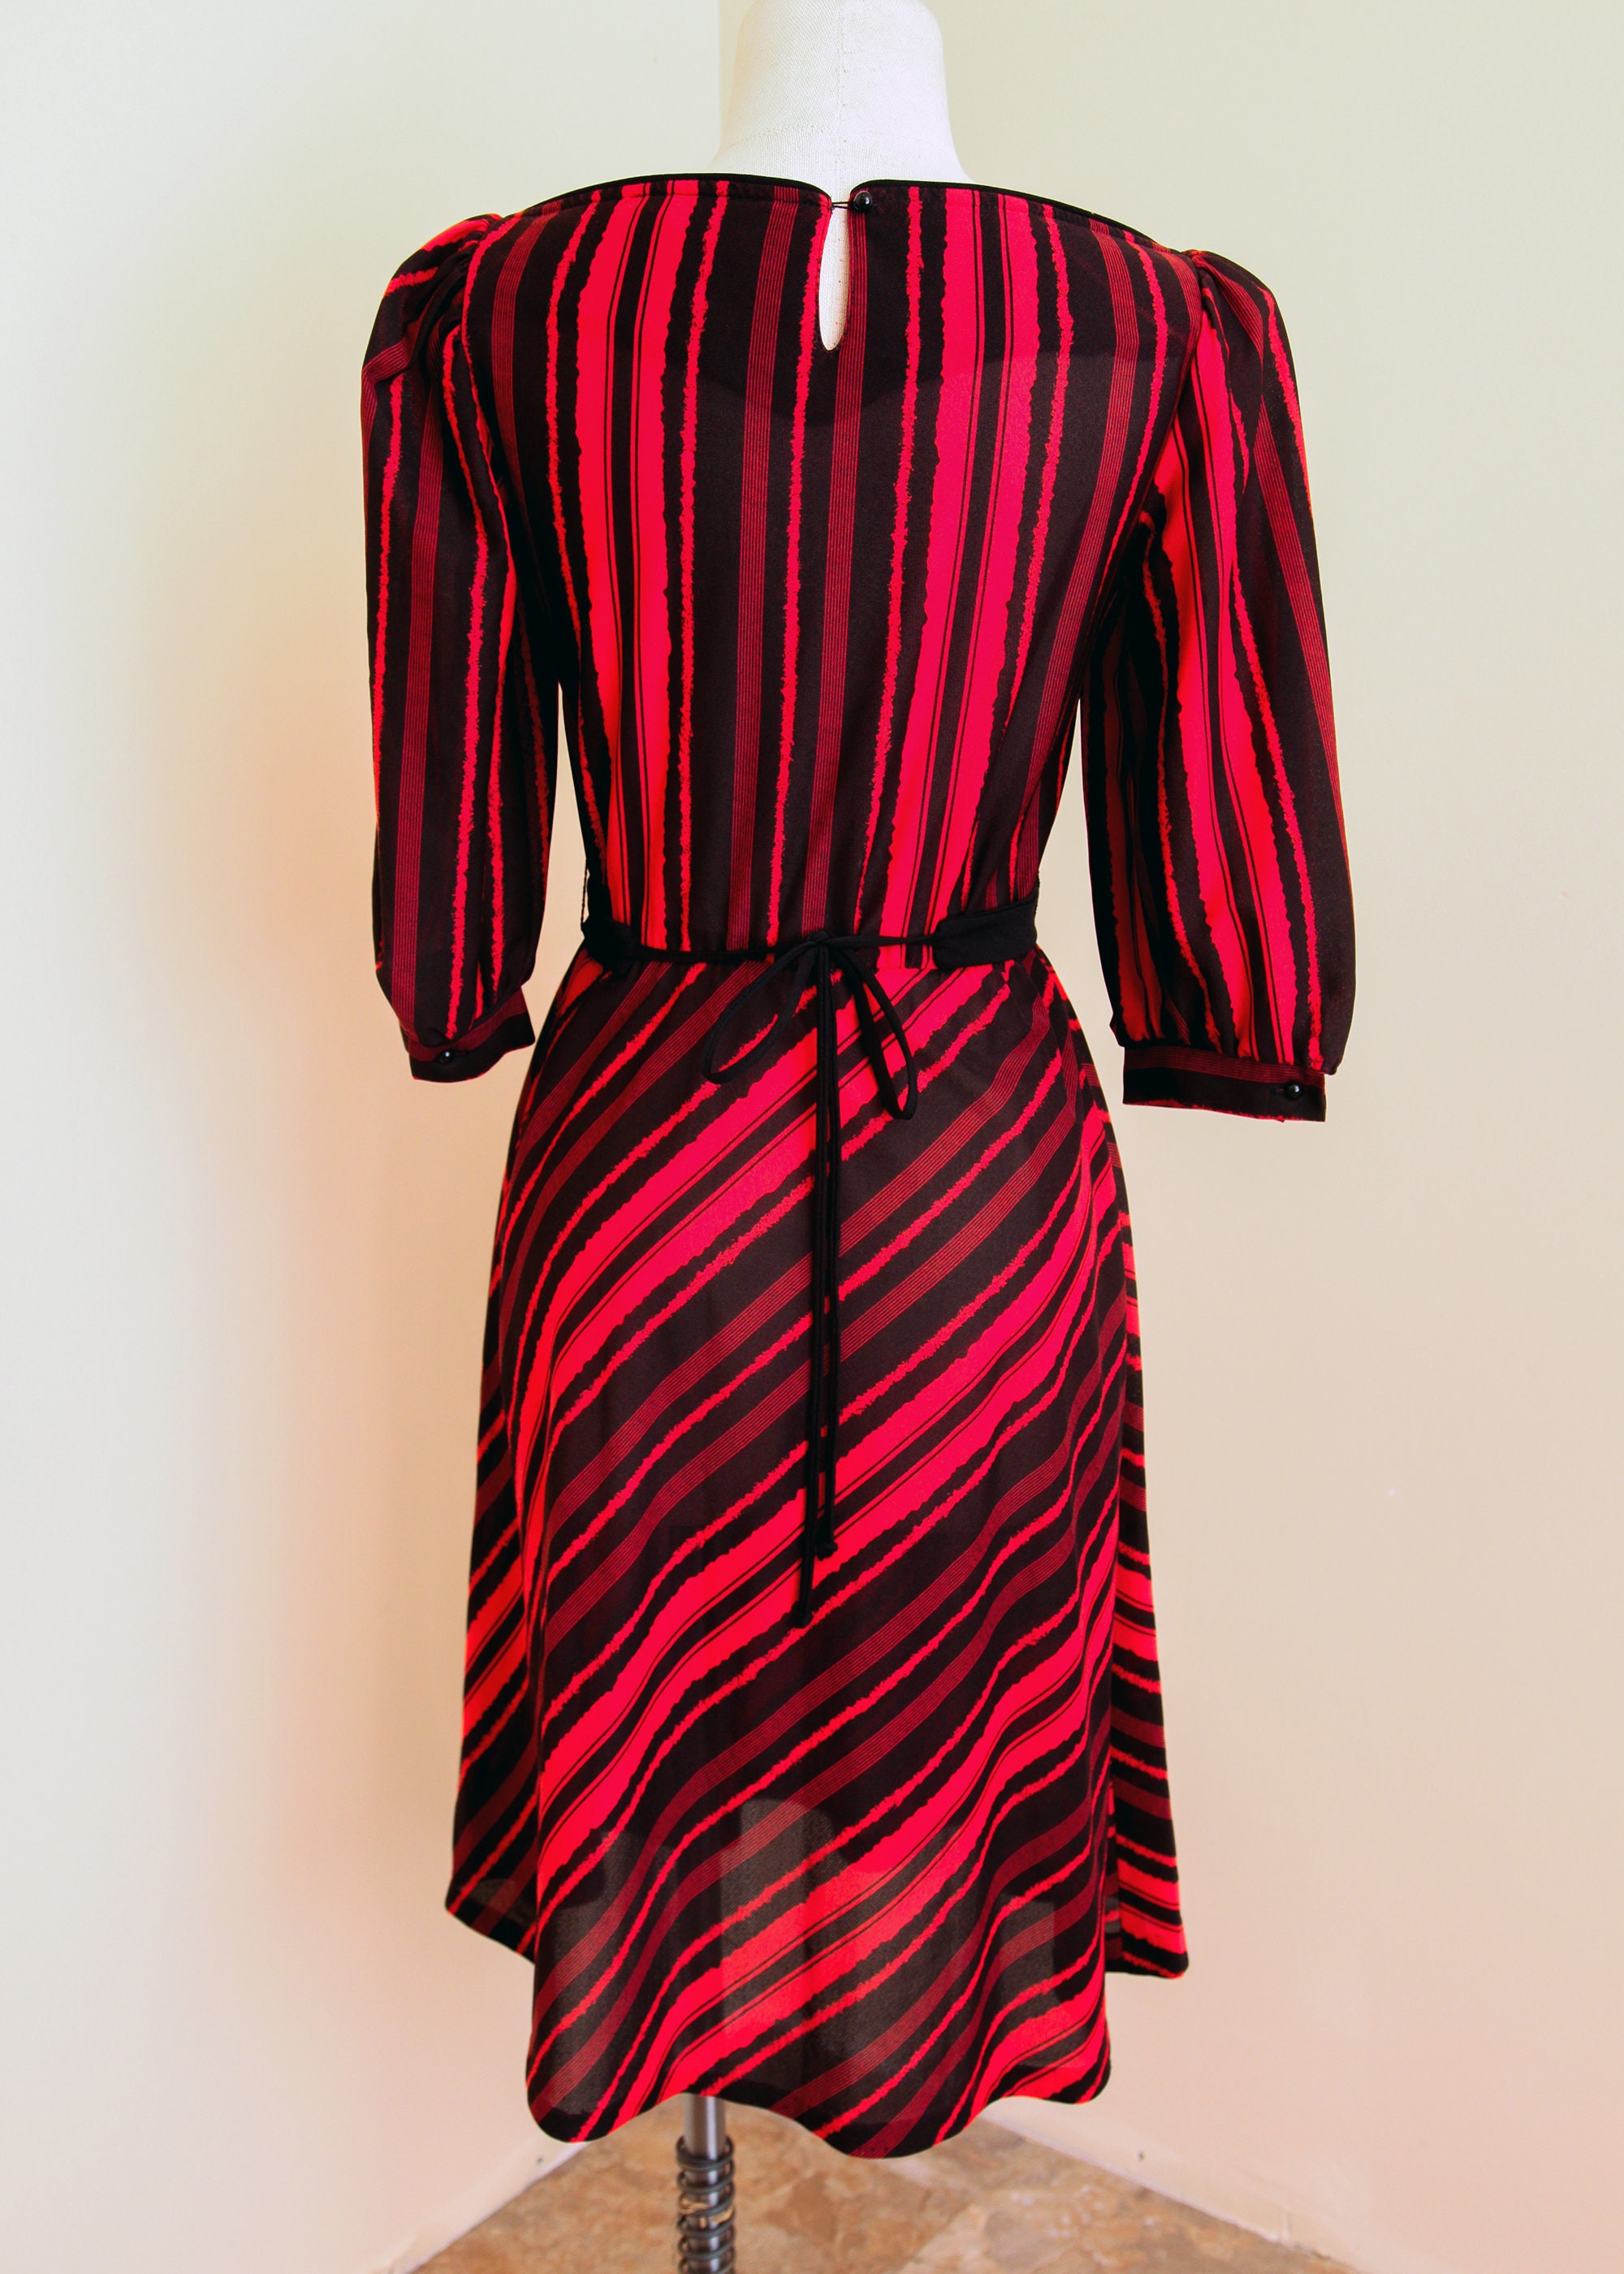 Red Black Striped Dress Jerri Gee 1970s Midi W/waist Tie Belt Boat ...